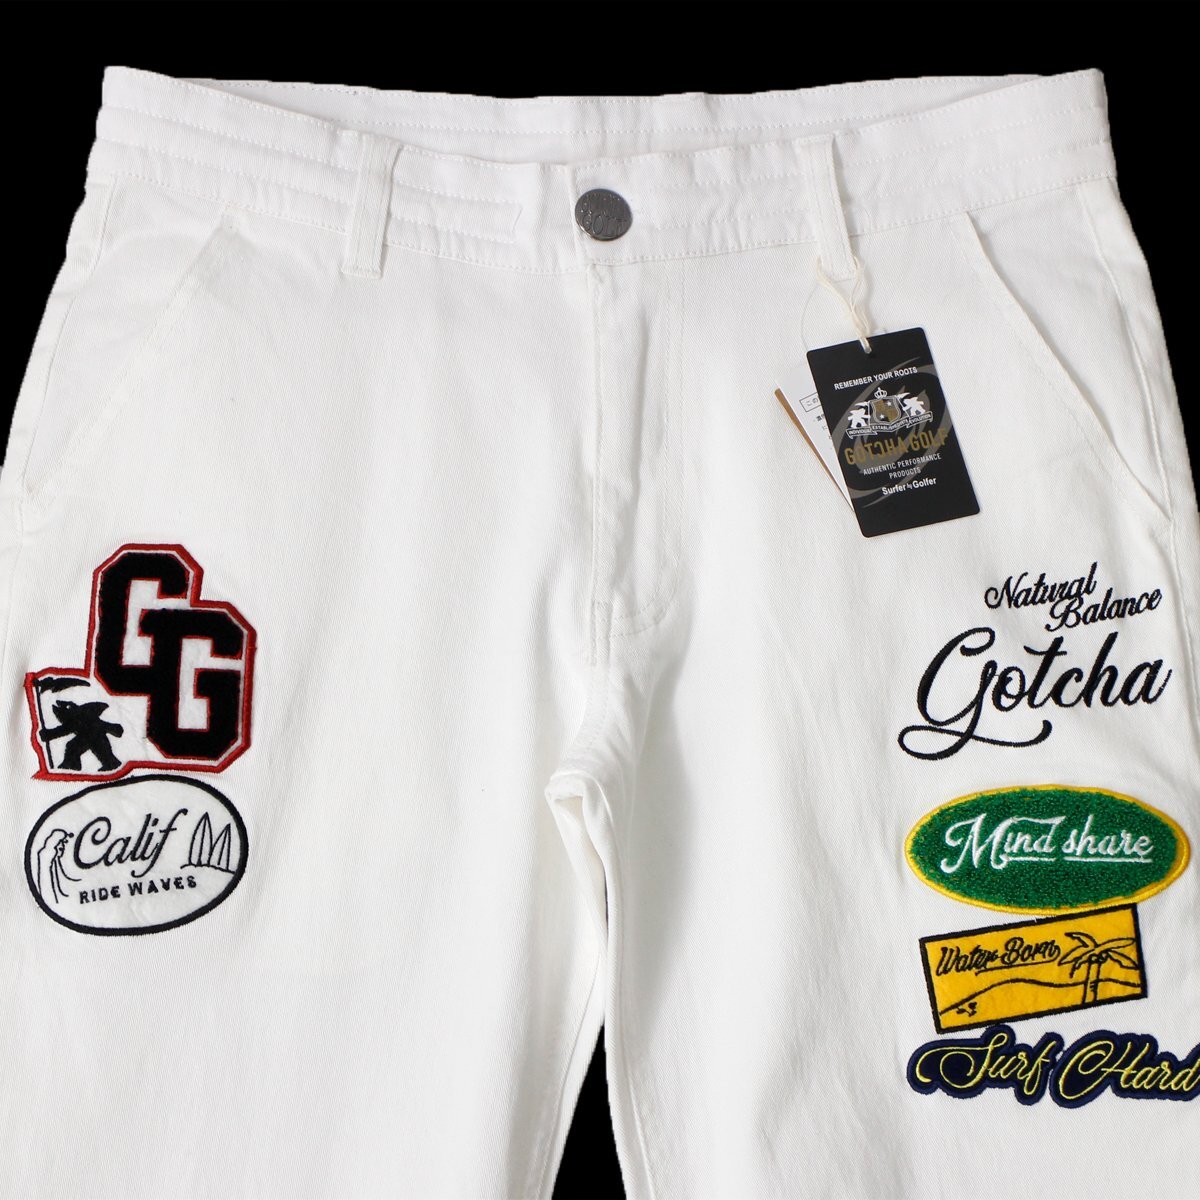  новый товар Gotcha Golf tsu il стрейч длинные брюки L весна лето GOTCHA GOLF premium нашивка мужской одежда белый *CC2263B